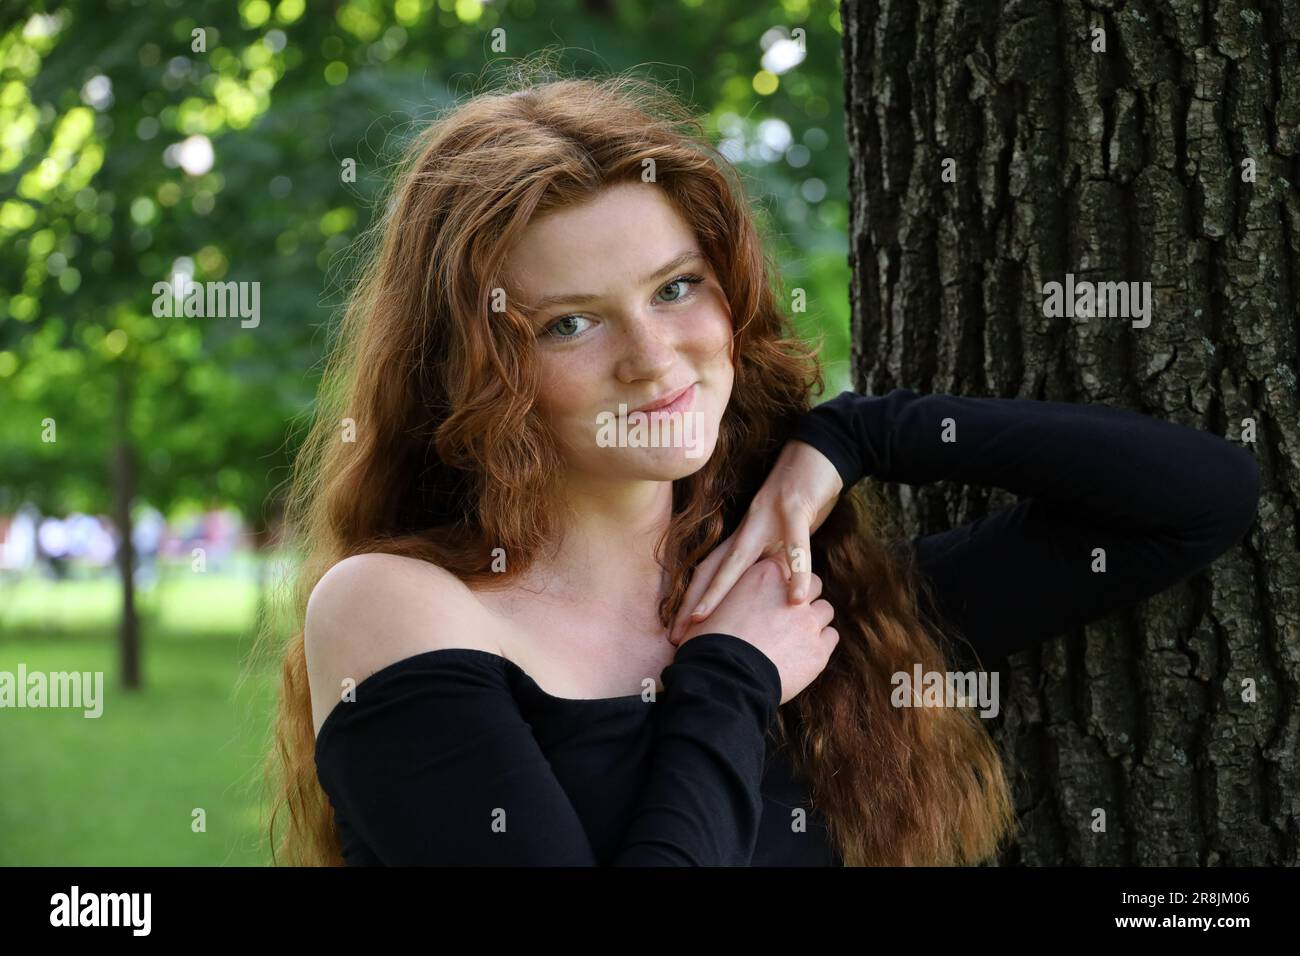 Attraktives lächelndes Mädchen mit langen roten Haaren und Sommersprossen, das neben dem Baum im Sommerpark steht. Junges Model mit schwarzem Oberteil, weibliche Schönheit Stockfoto